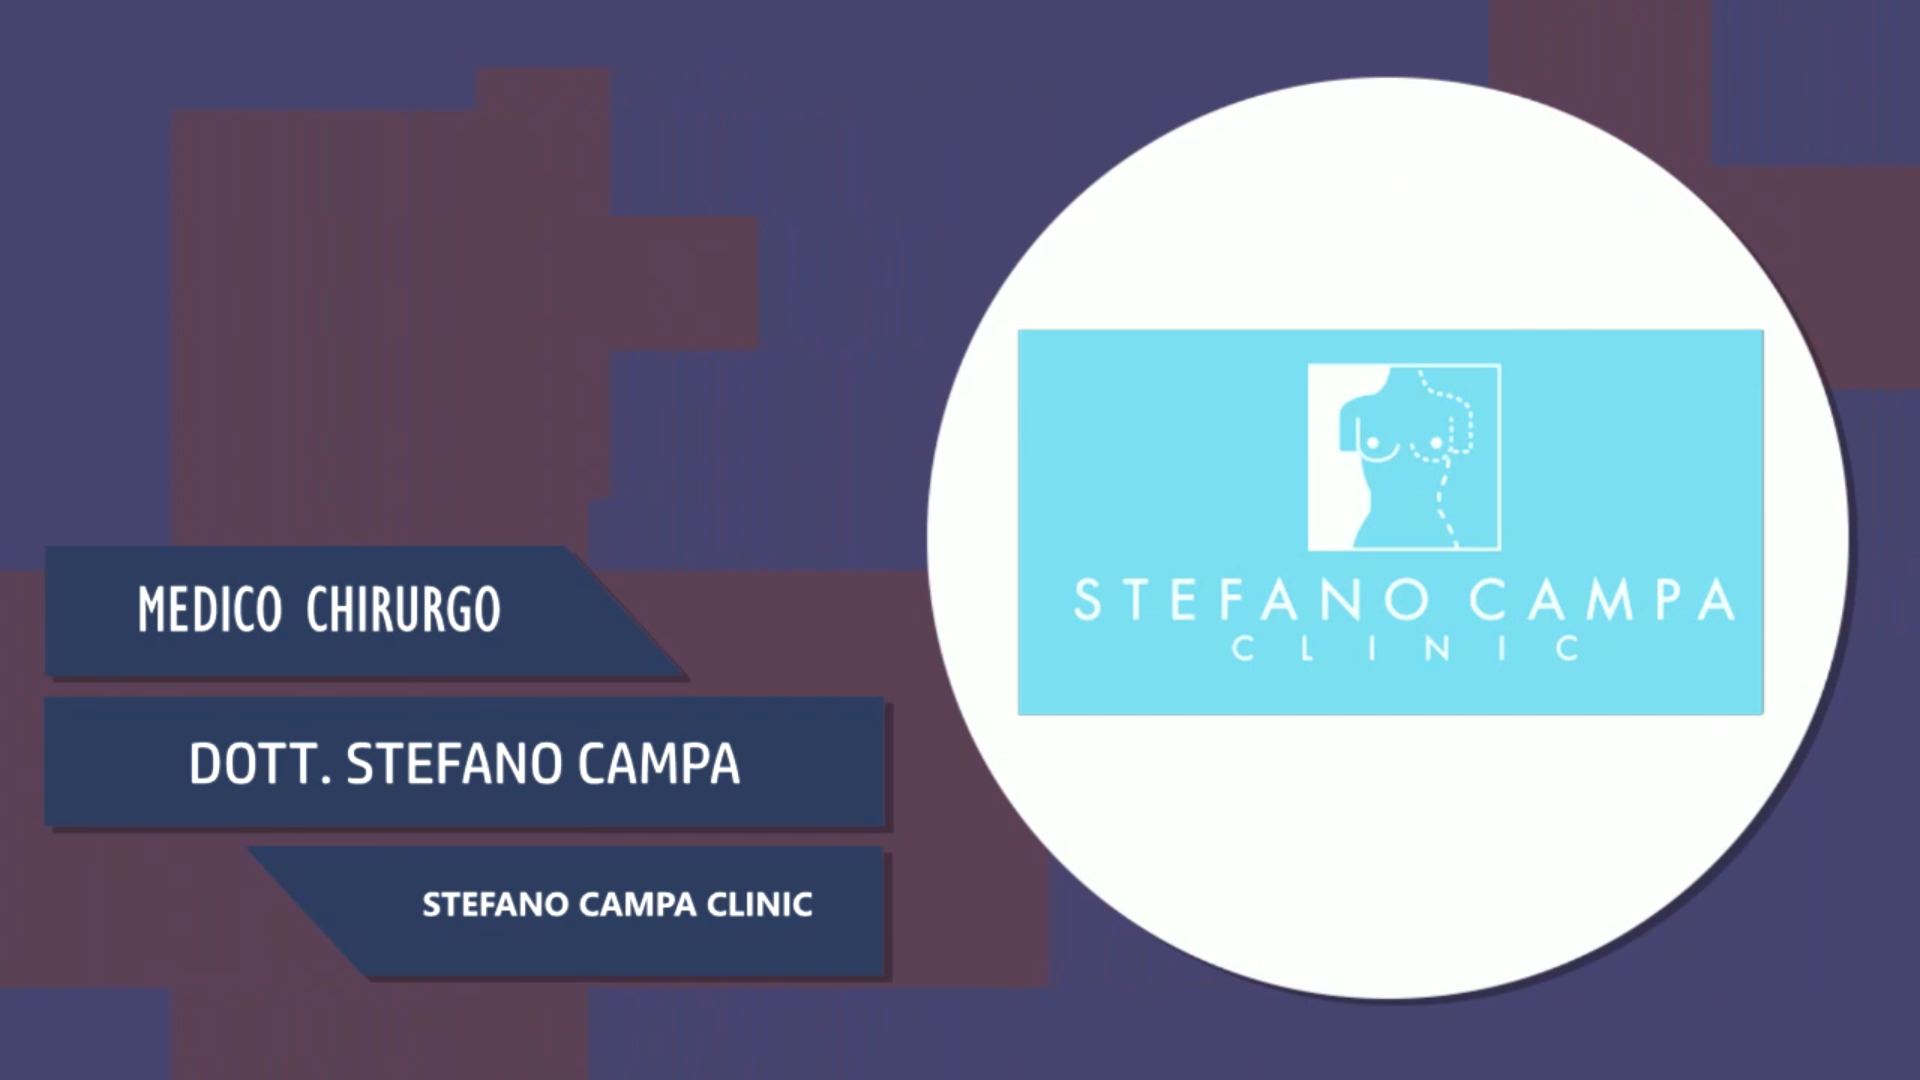 Intervista al Dott. Stefano Campa – Stefano Campa Clinic